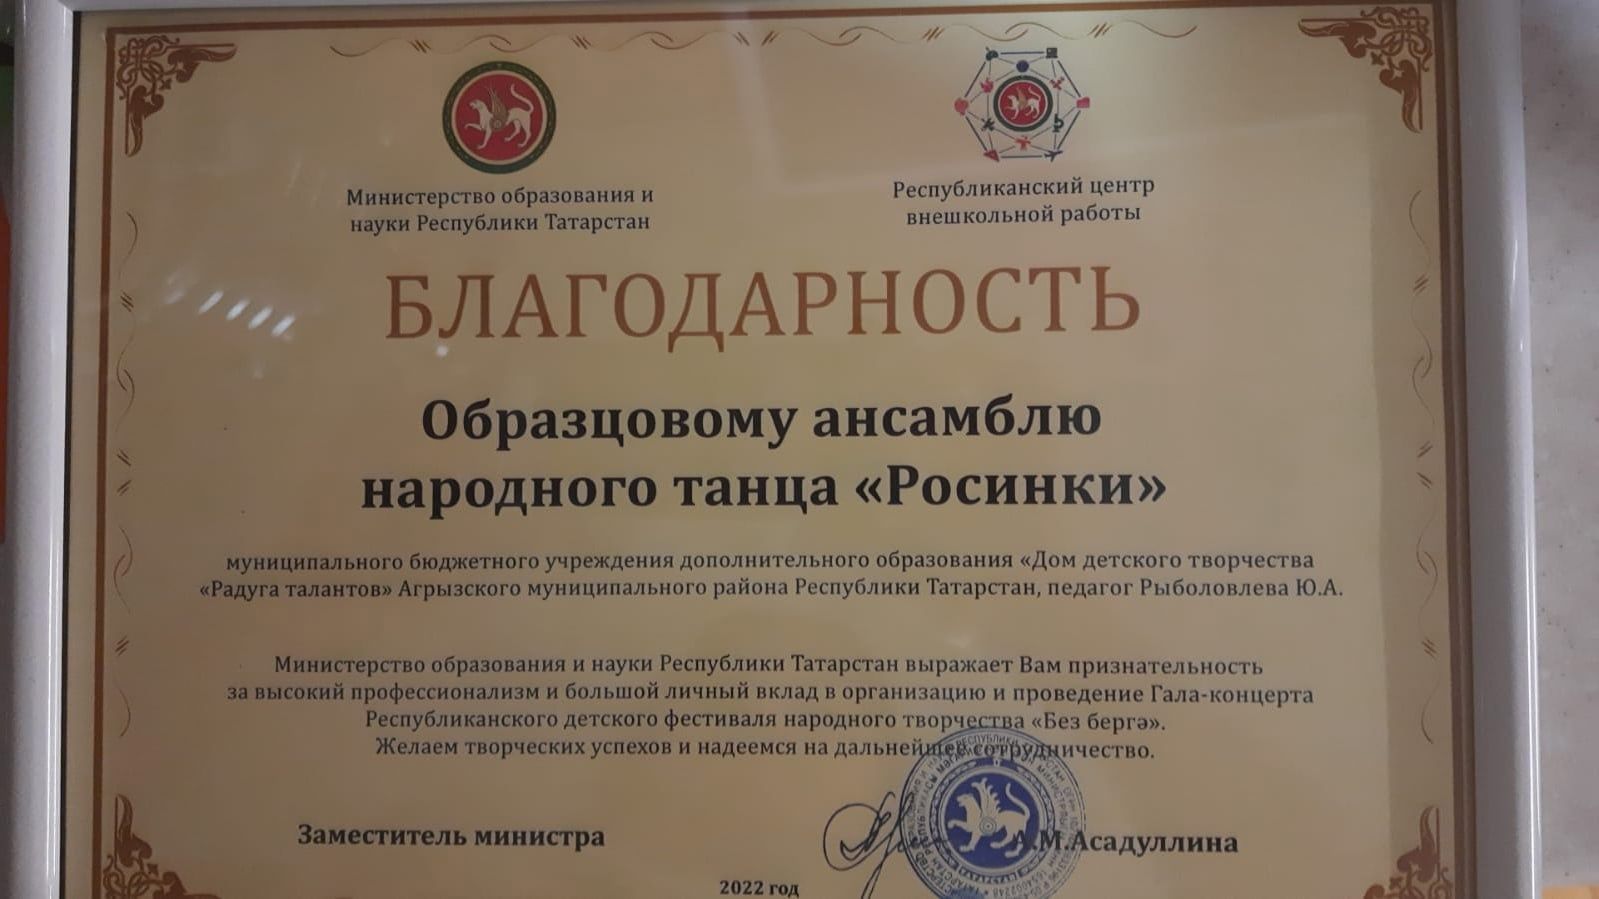 Образцовый ансамбль «Росинки» удостоен благодарности Министерства образования и науки РТ